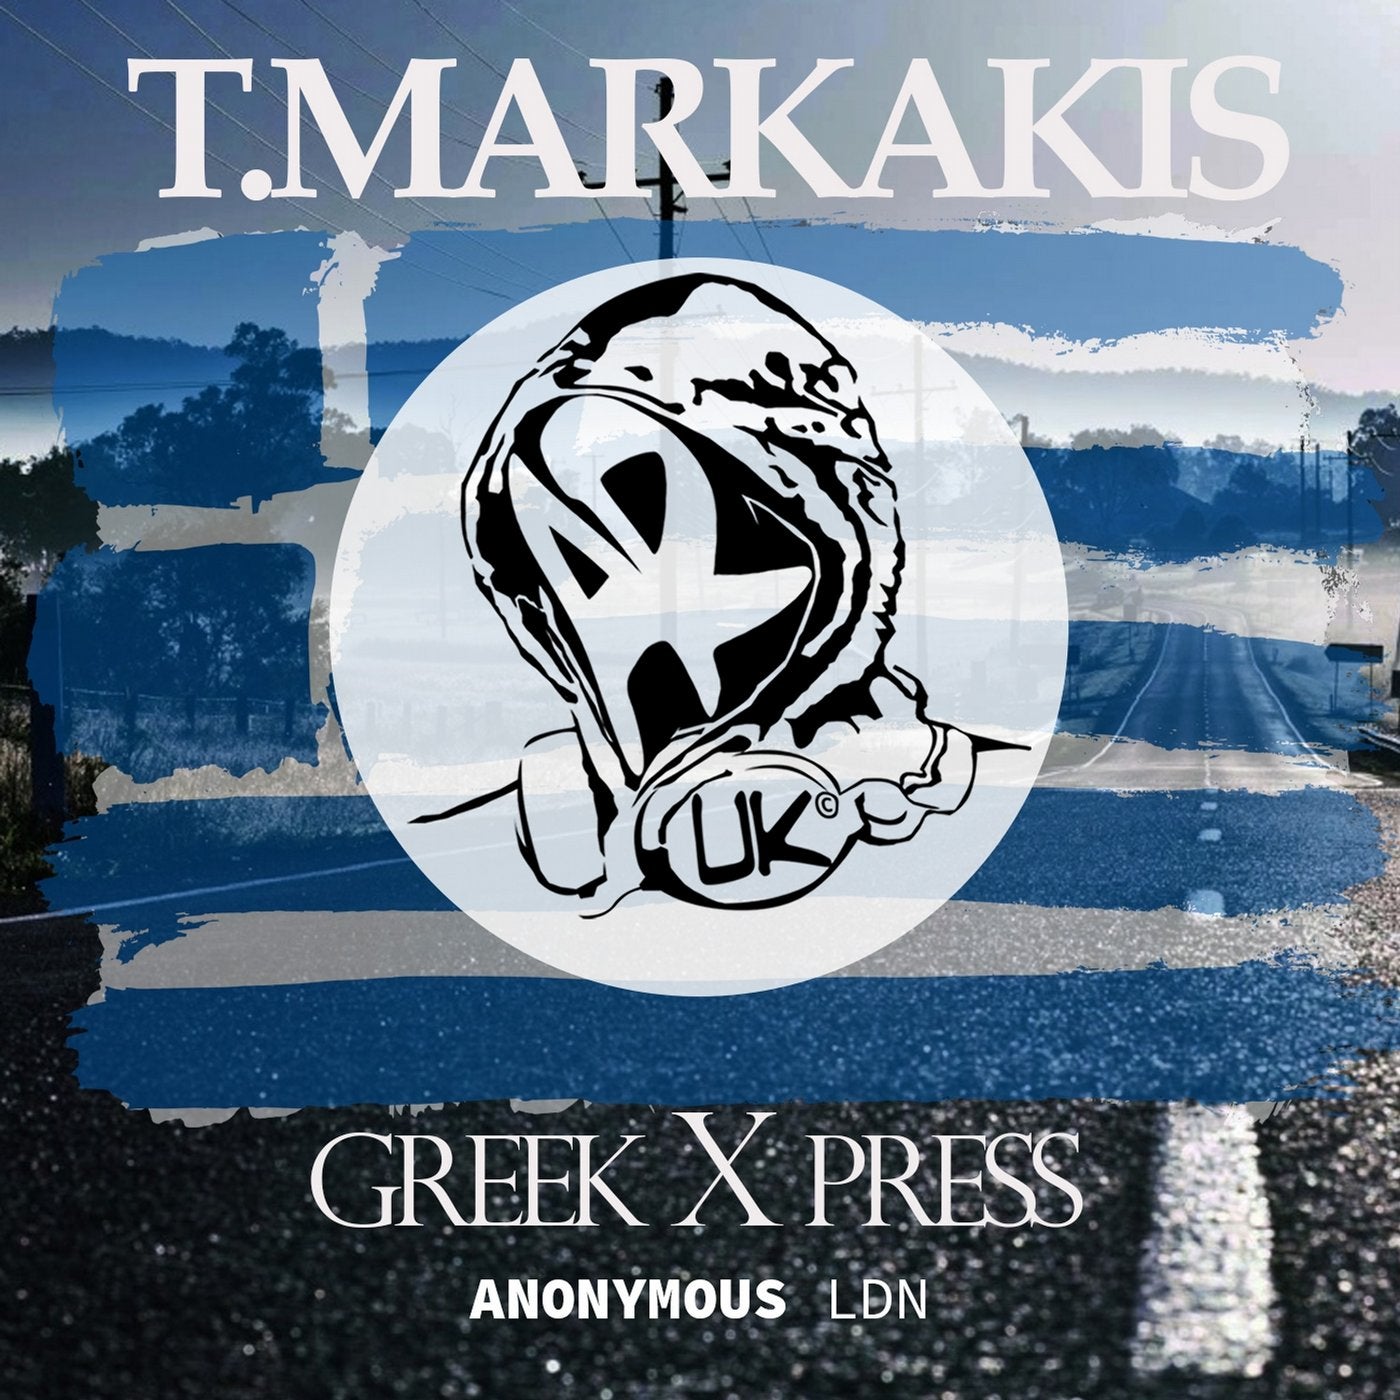 Greek X Press